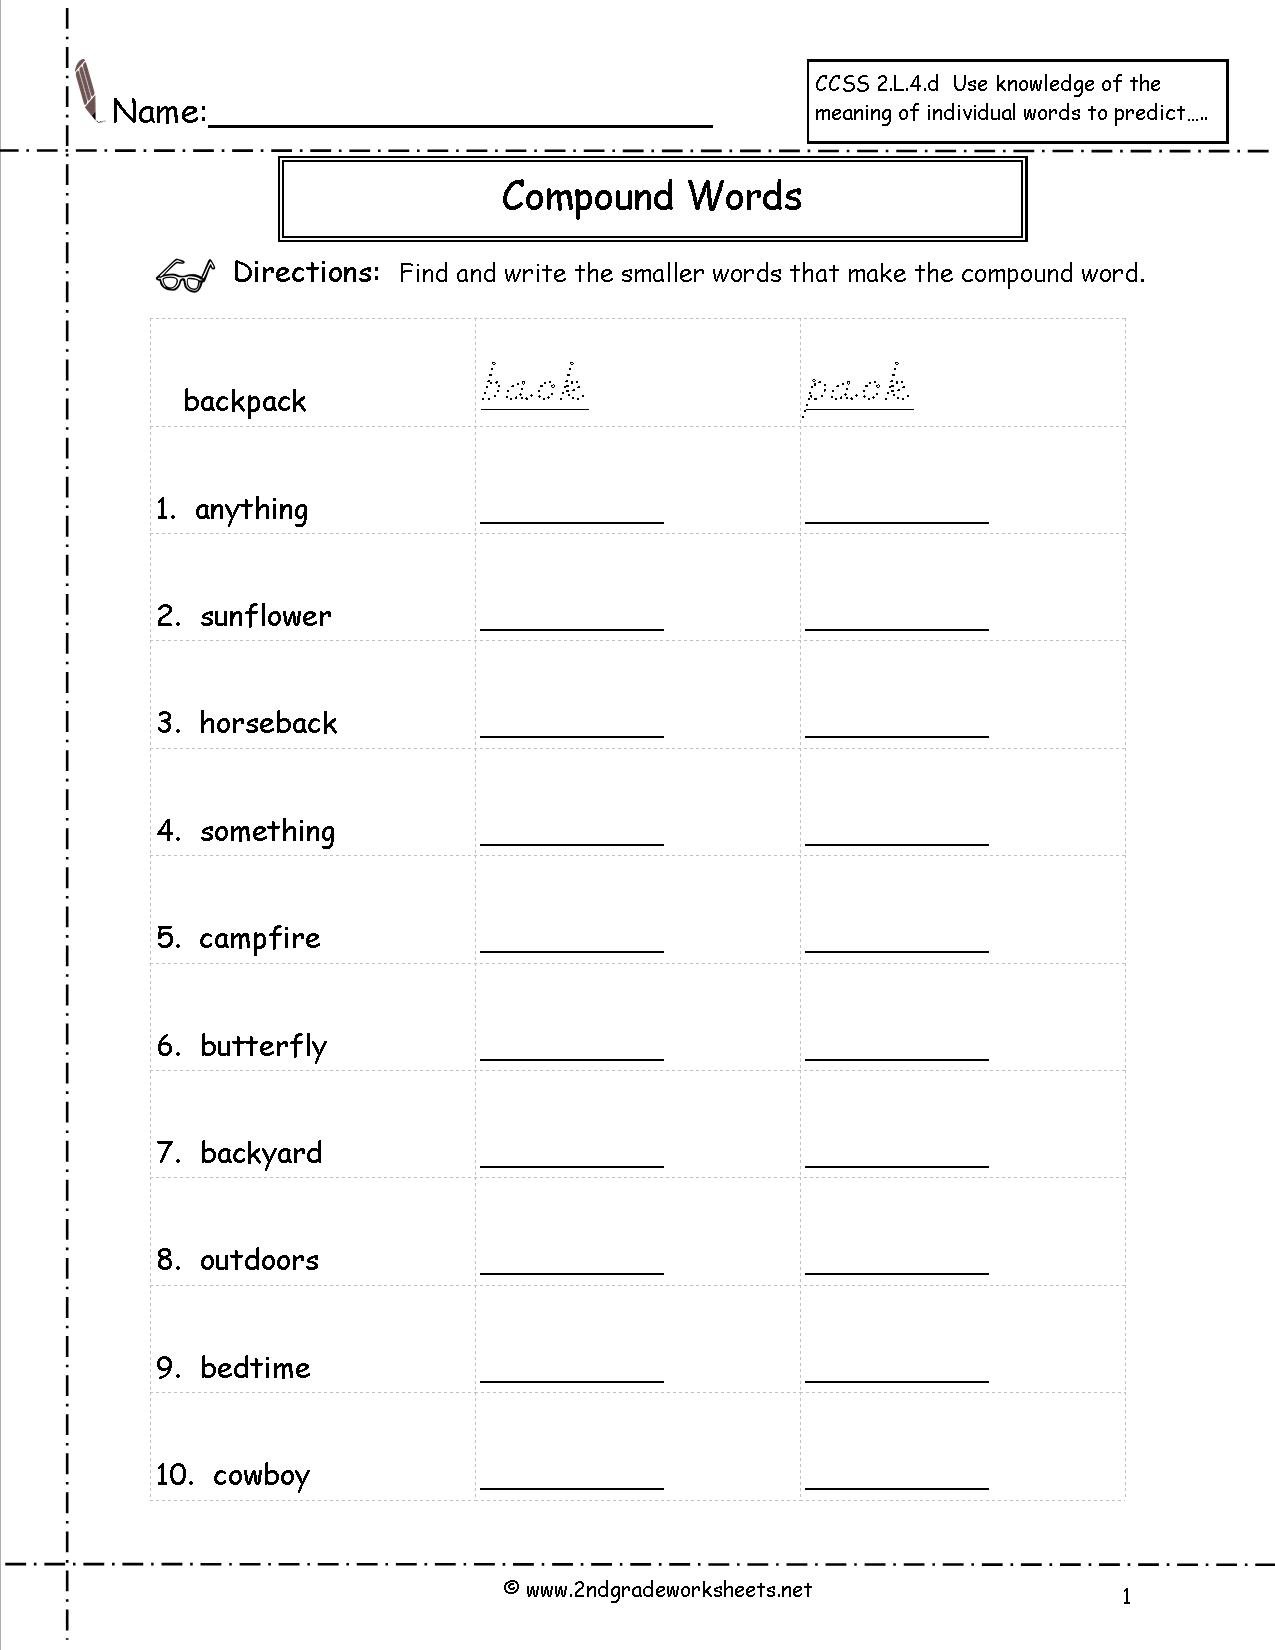 Grammar Worksheets For 2nd Grade The Best Worksheets Image